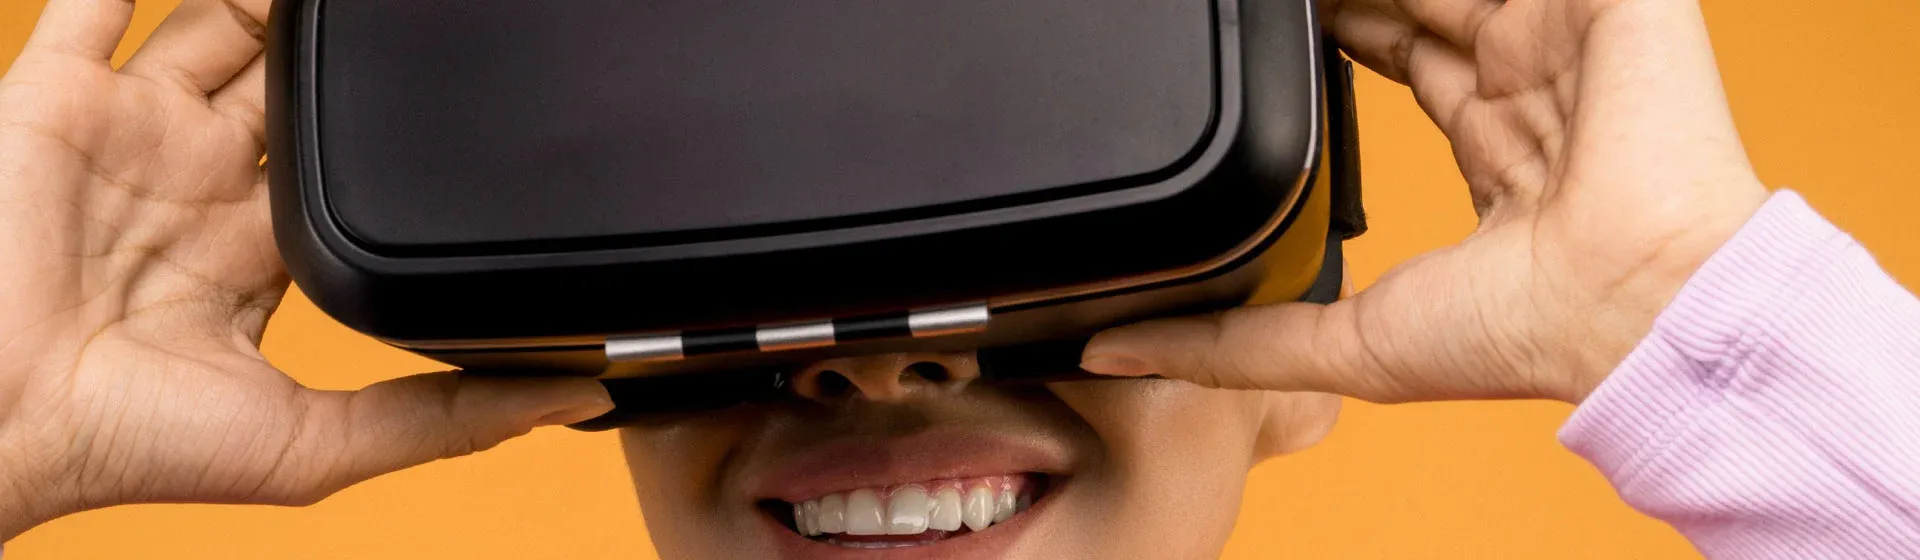 Jogos de realidade virtual: veja lista de melhores games para VR Box